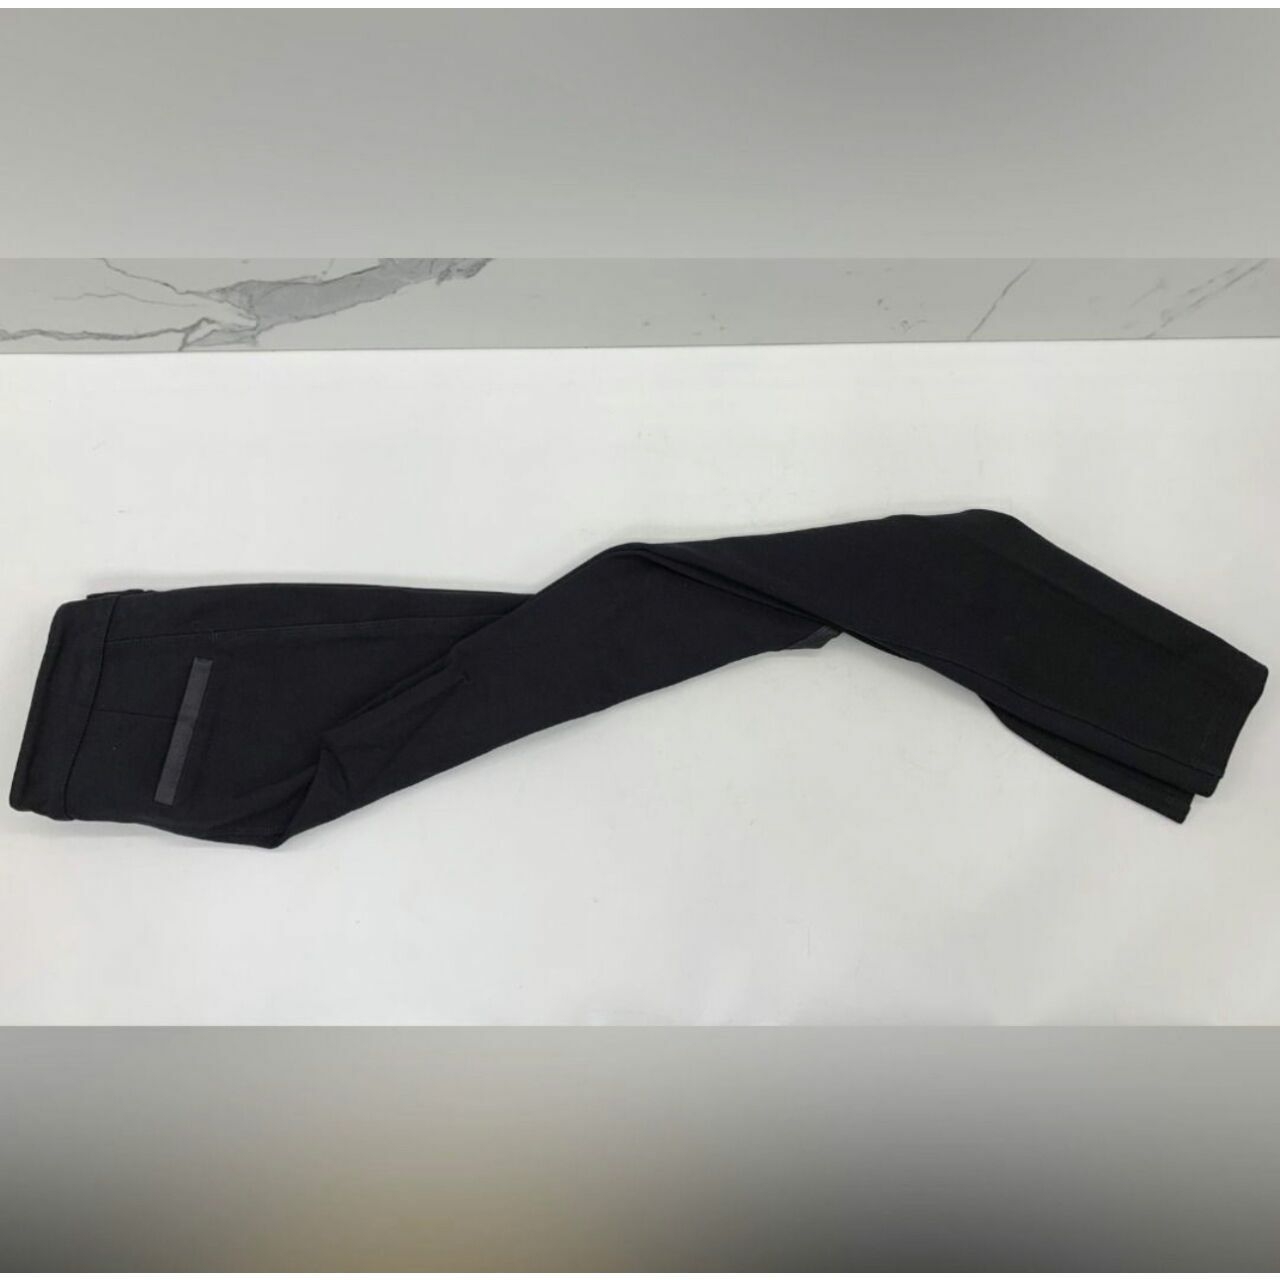 Armani Exchange Black Long Pants